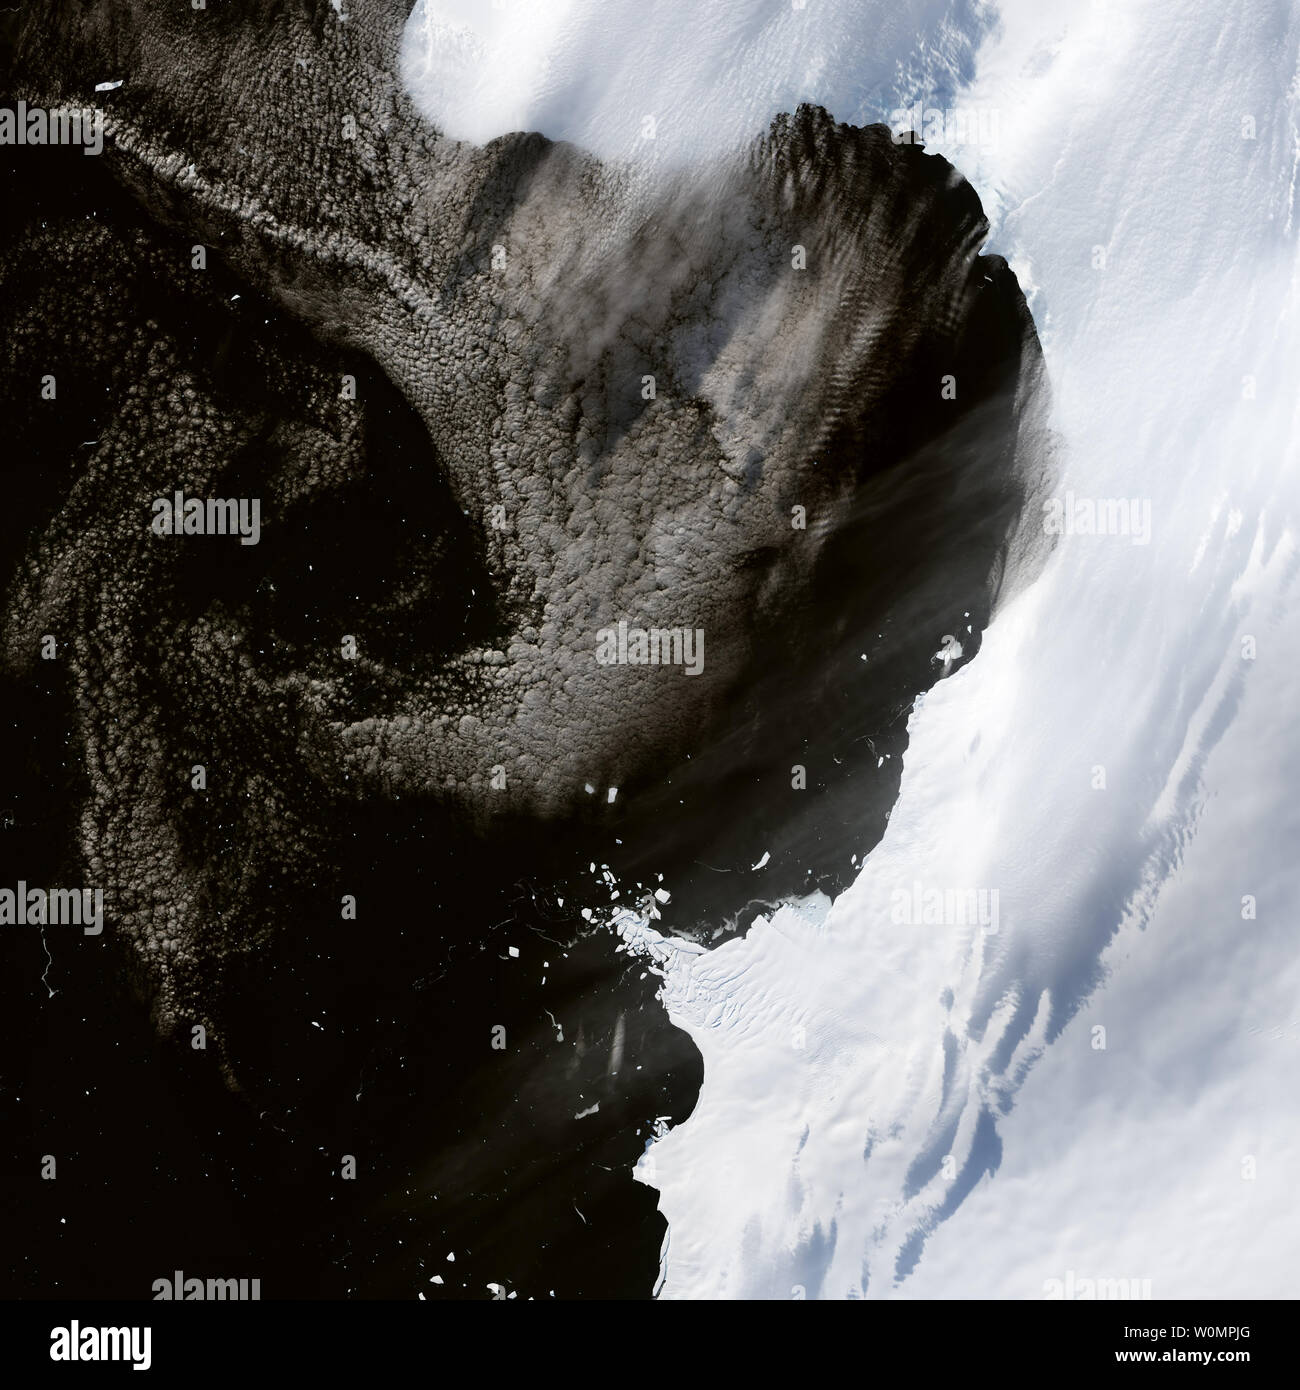 Lungo la Bellingshausen mare della costa ovest Antartide, ghiaccio è stata ritirata la navigazione sia perso in mare. Gli scienziati lo sapeva, ma mancava un quadro completo della scala. Un team di ricercatori ha compilato un satellite Landsat basato su set di dati e trovato che tali perdite sono state andando su per almeno gli ultimi quattro decenni. Il rifugio diffuso probabilmente è stato causato dalle calde acque oceaniche leccare a i lati inferiori del ghiaccio galleggiante in prossimità della linea di messa a terra. L'immagine sopra mostra una zona vicino Eltanin Bay, dove la maggior parte della linea di messa a terra si trova all'seaward anteriore del ghiaccio. È stato acqui Foto Stock